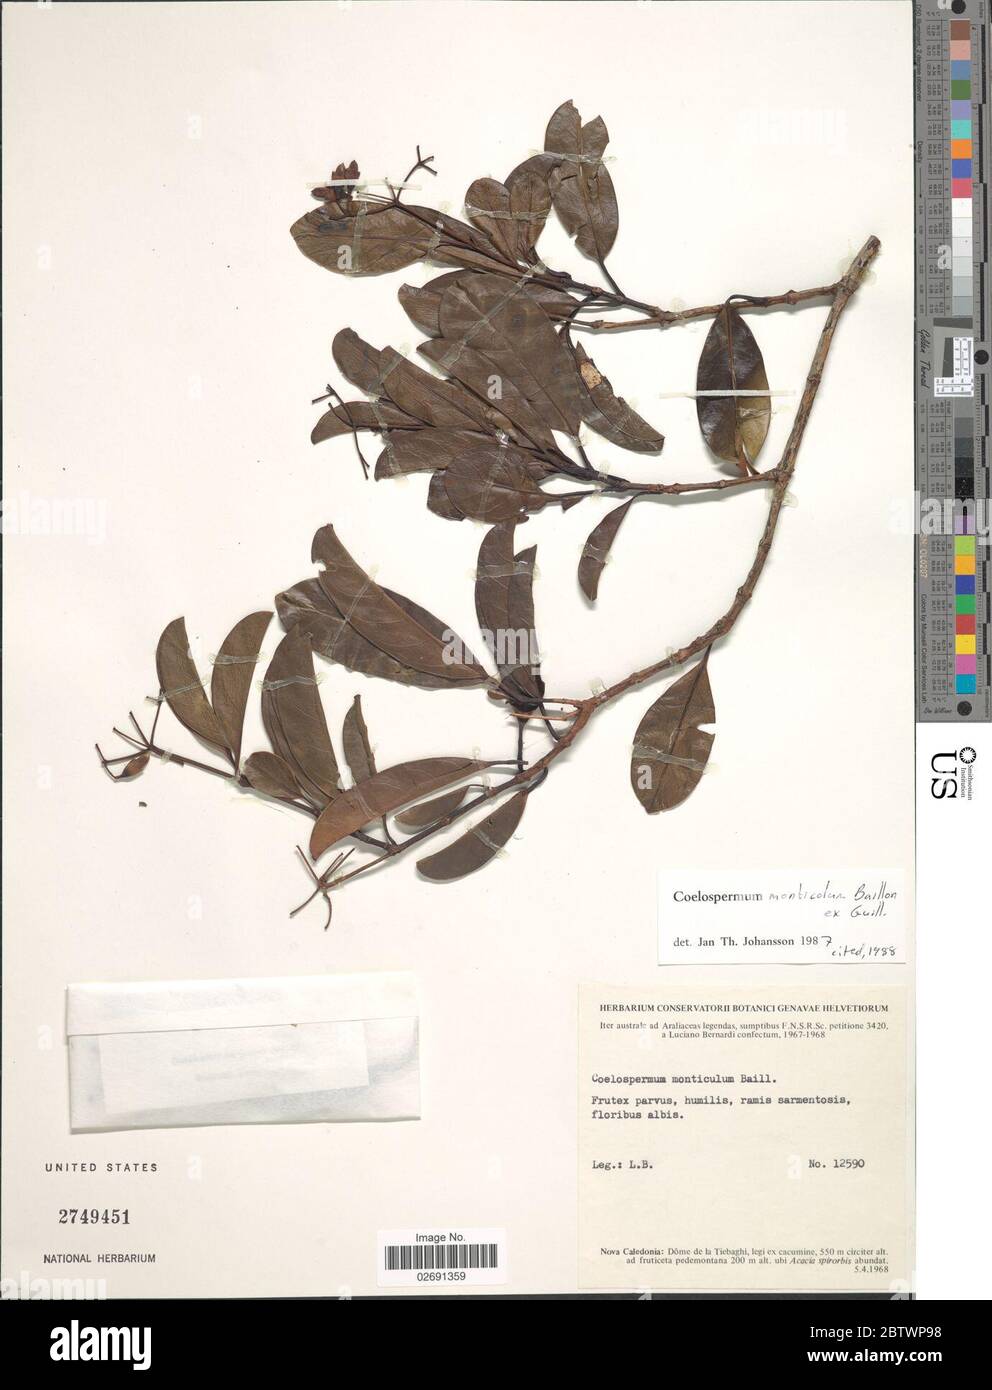 Coelospermum monticola Baill ex Guillaumin. Stock Photo